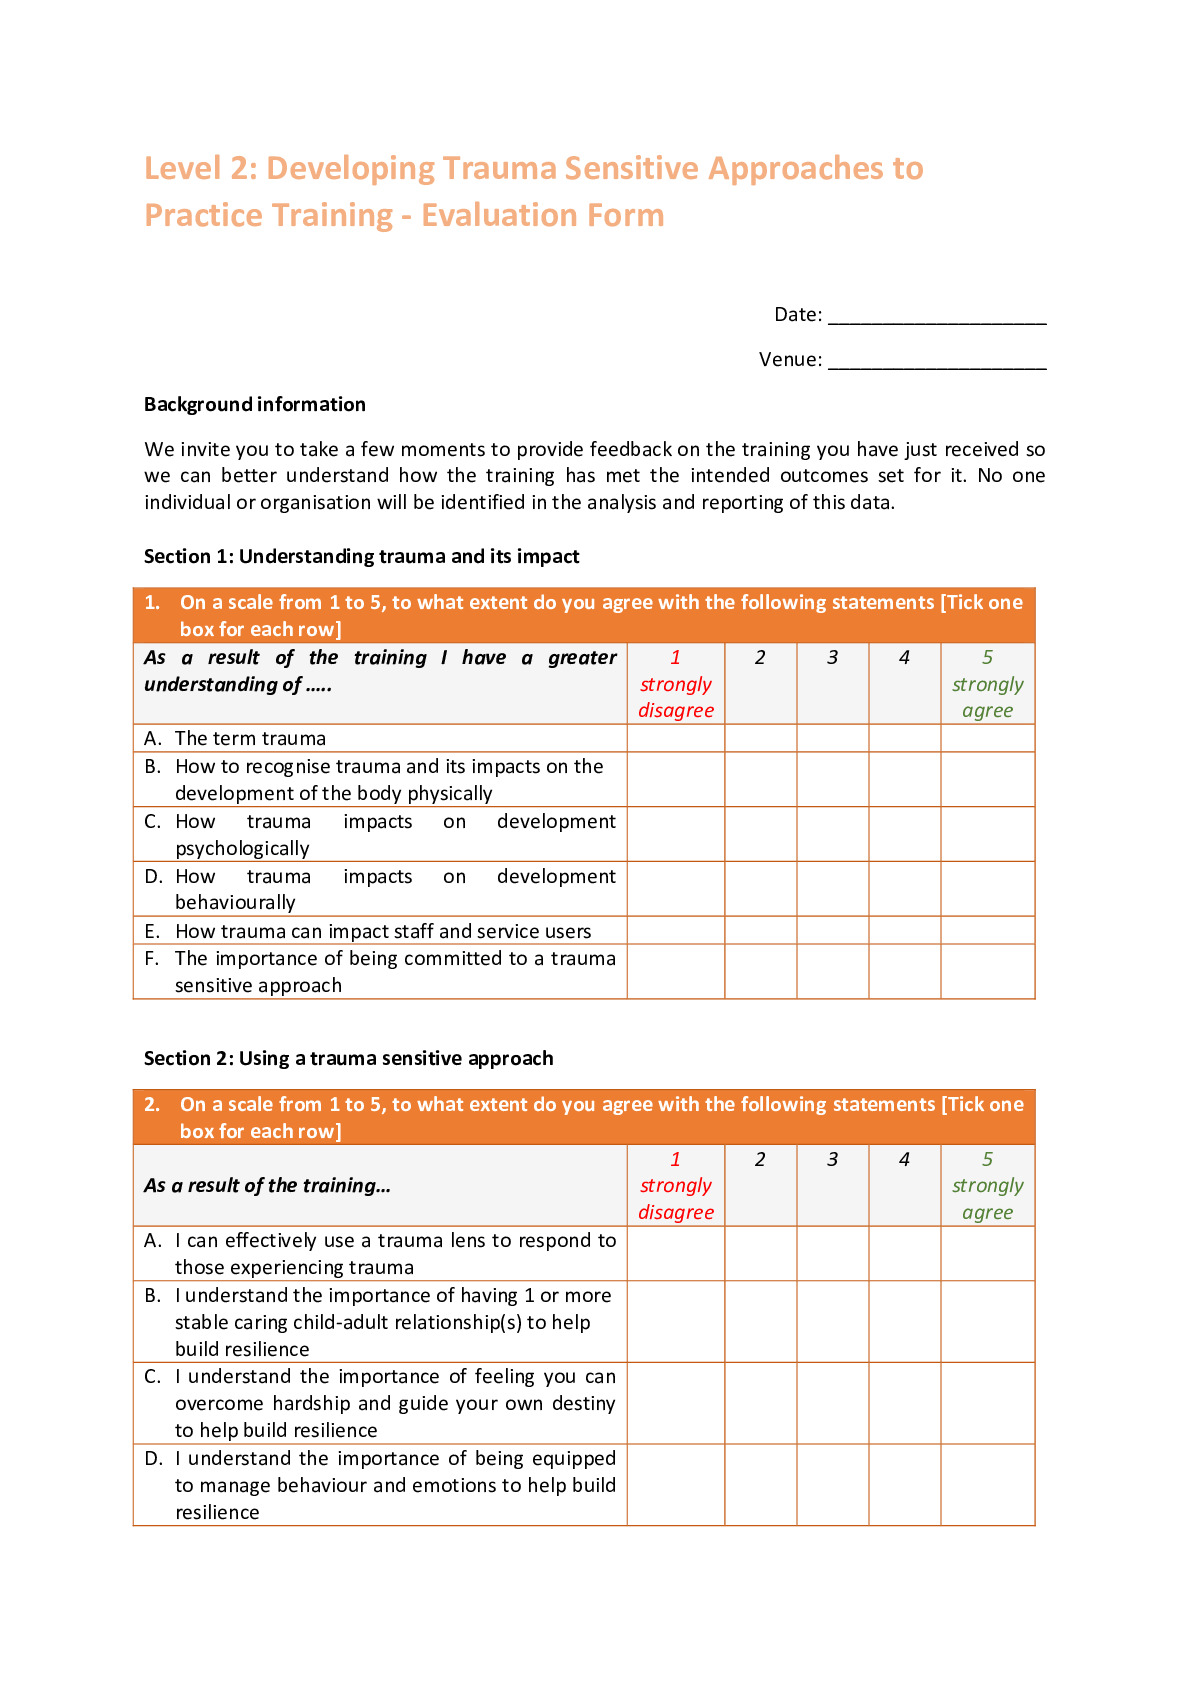 Level 2 Training Evaluation Questionnaire (Final)